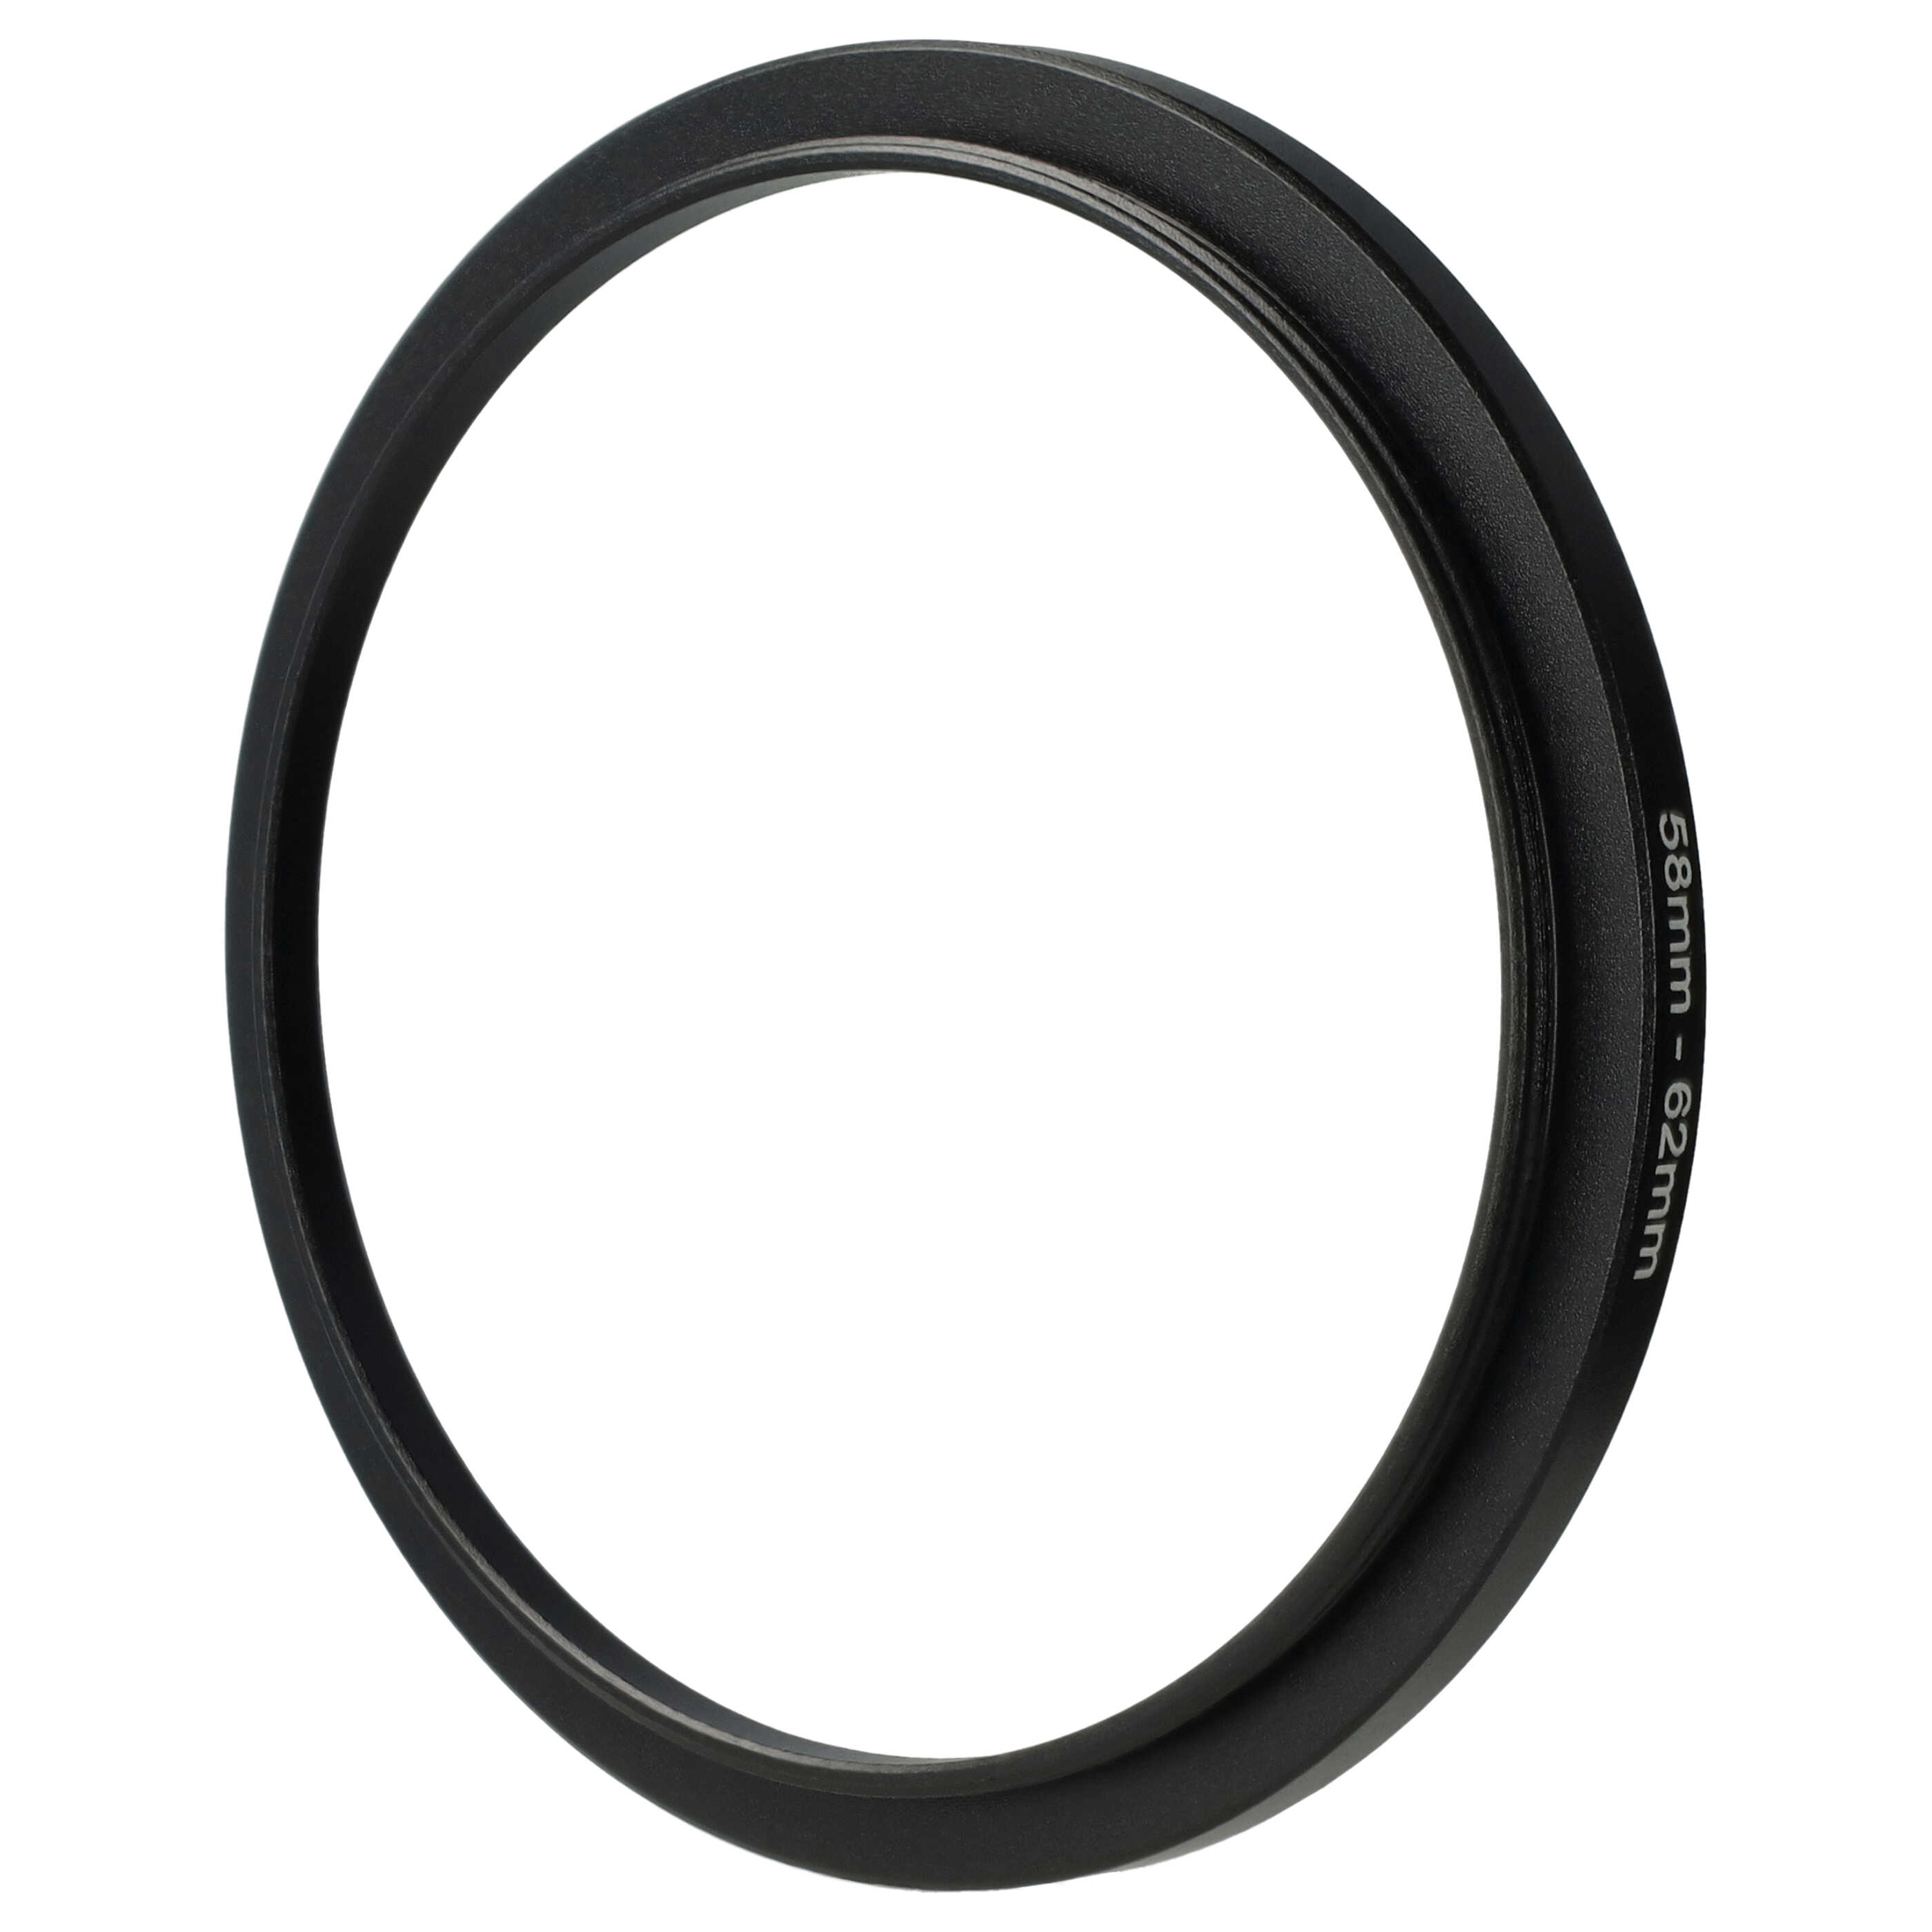 Step-Up-Ring Adapter 58 mm auf 62 mm passend für diverse Kamera-Objektive - Filteradapter